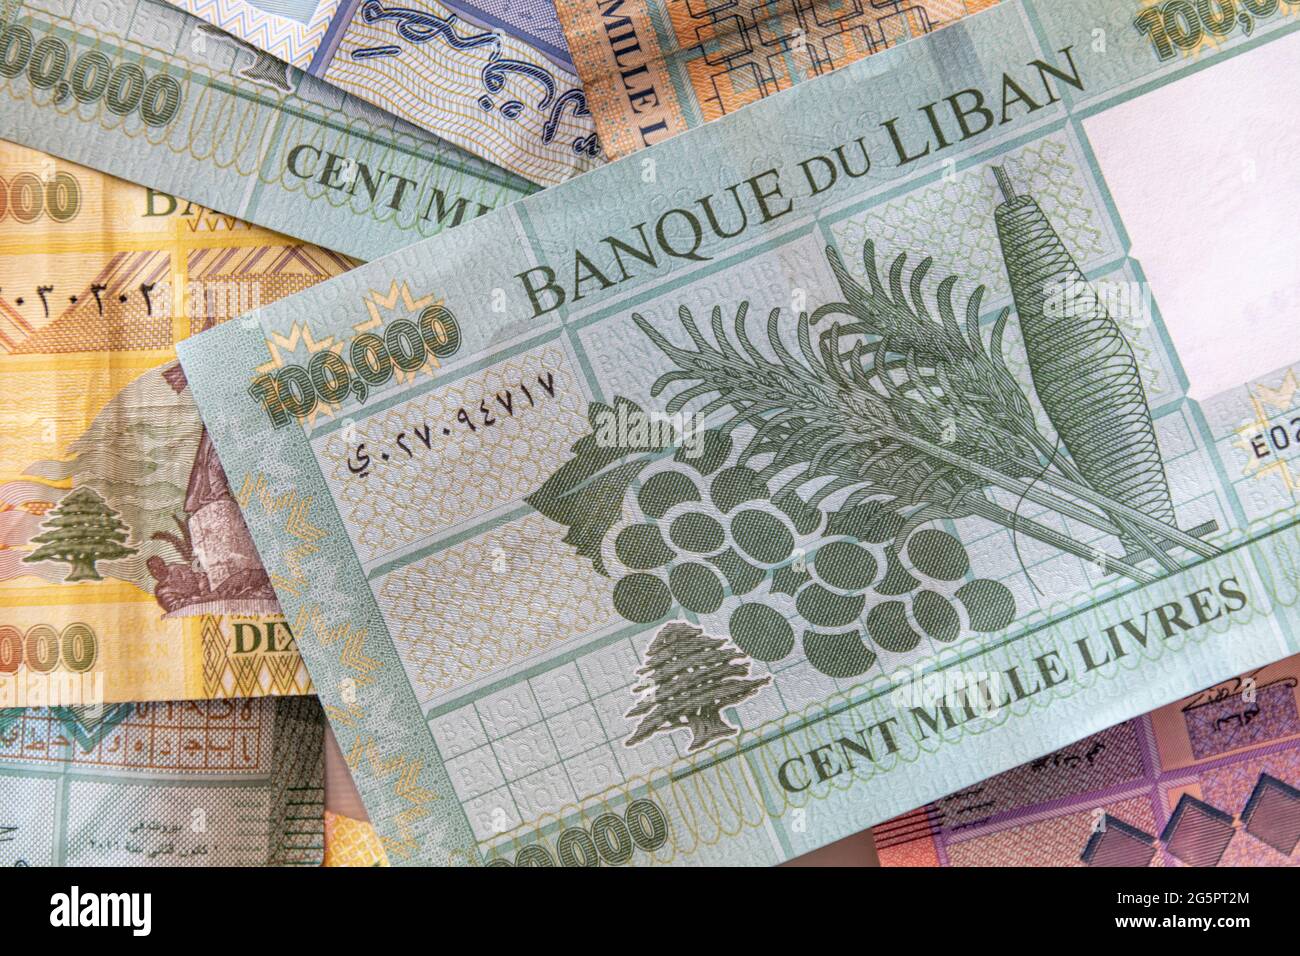 Monnaie Lira libanaise (livre libanaise) - la monnaie libanaise a perdu  plus de 90 pour cent de sa valeur depuis octobre 2019 Photo Stock - Alamy